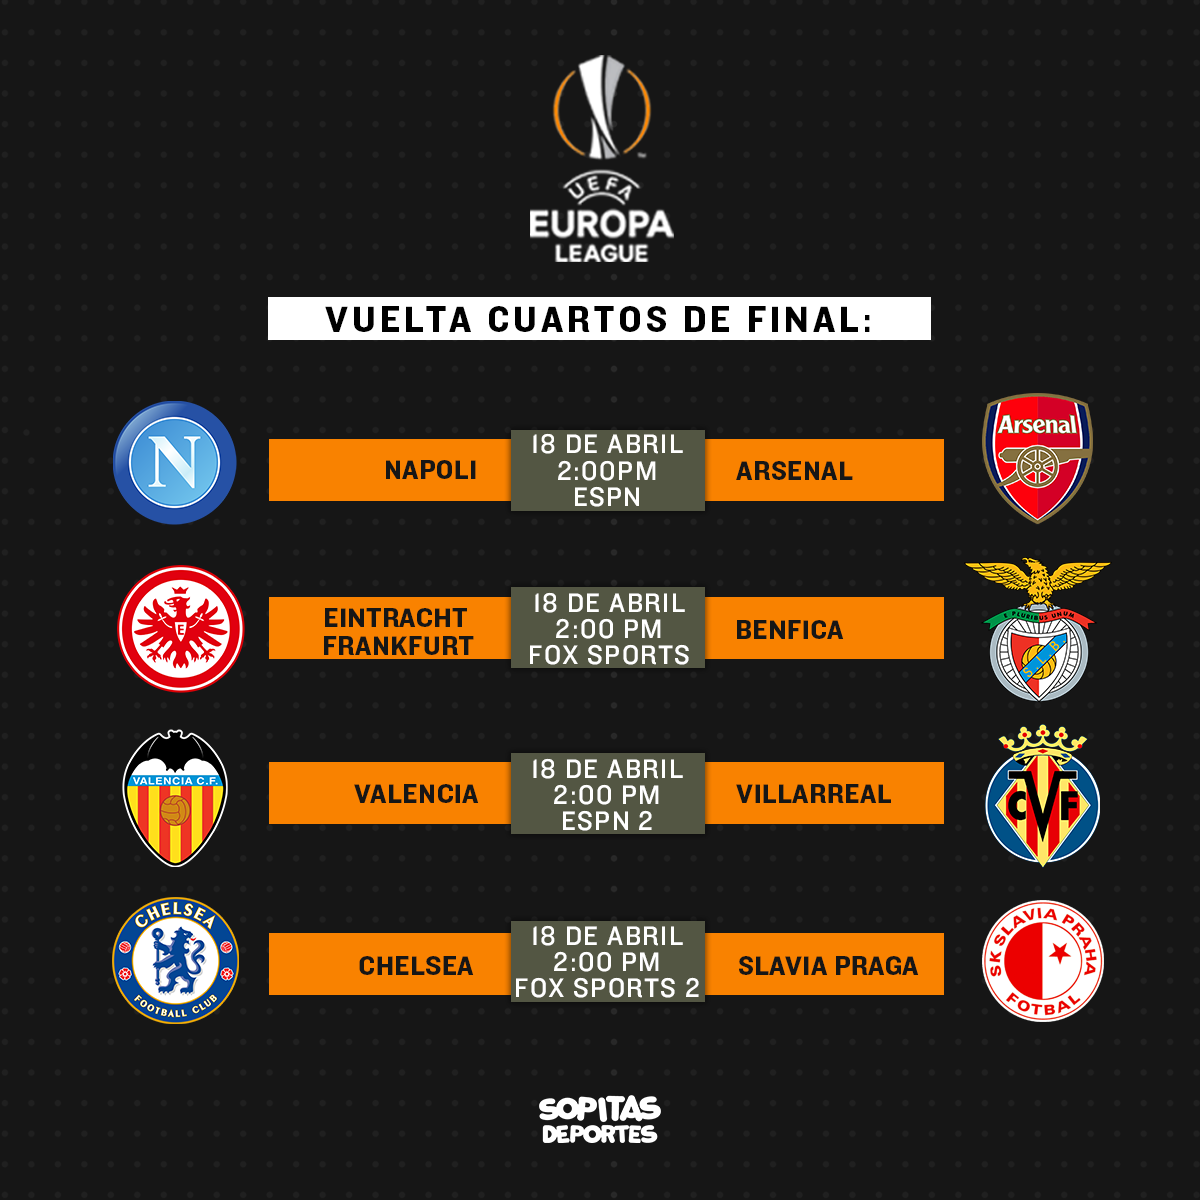 ¿Dónde, cuándo y cómo ver la vuelta de Cuartos de Final de la Europa League?